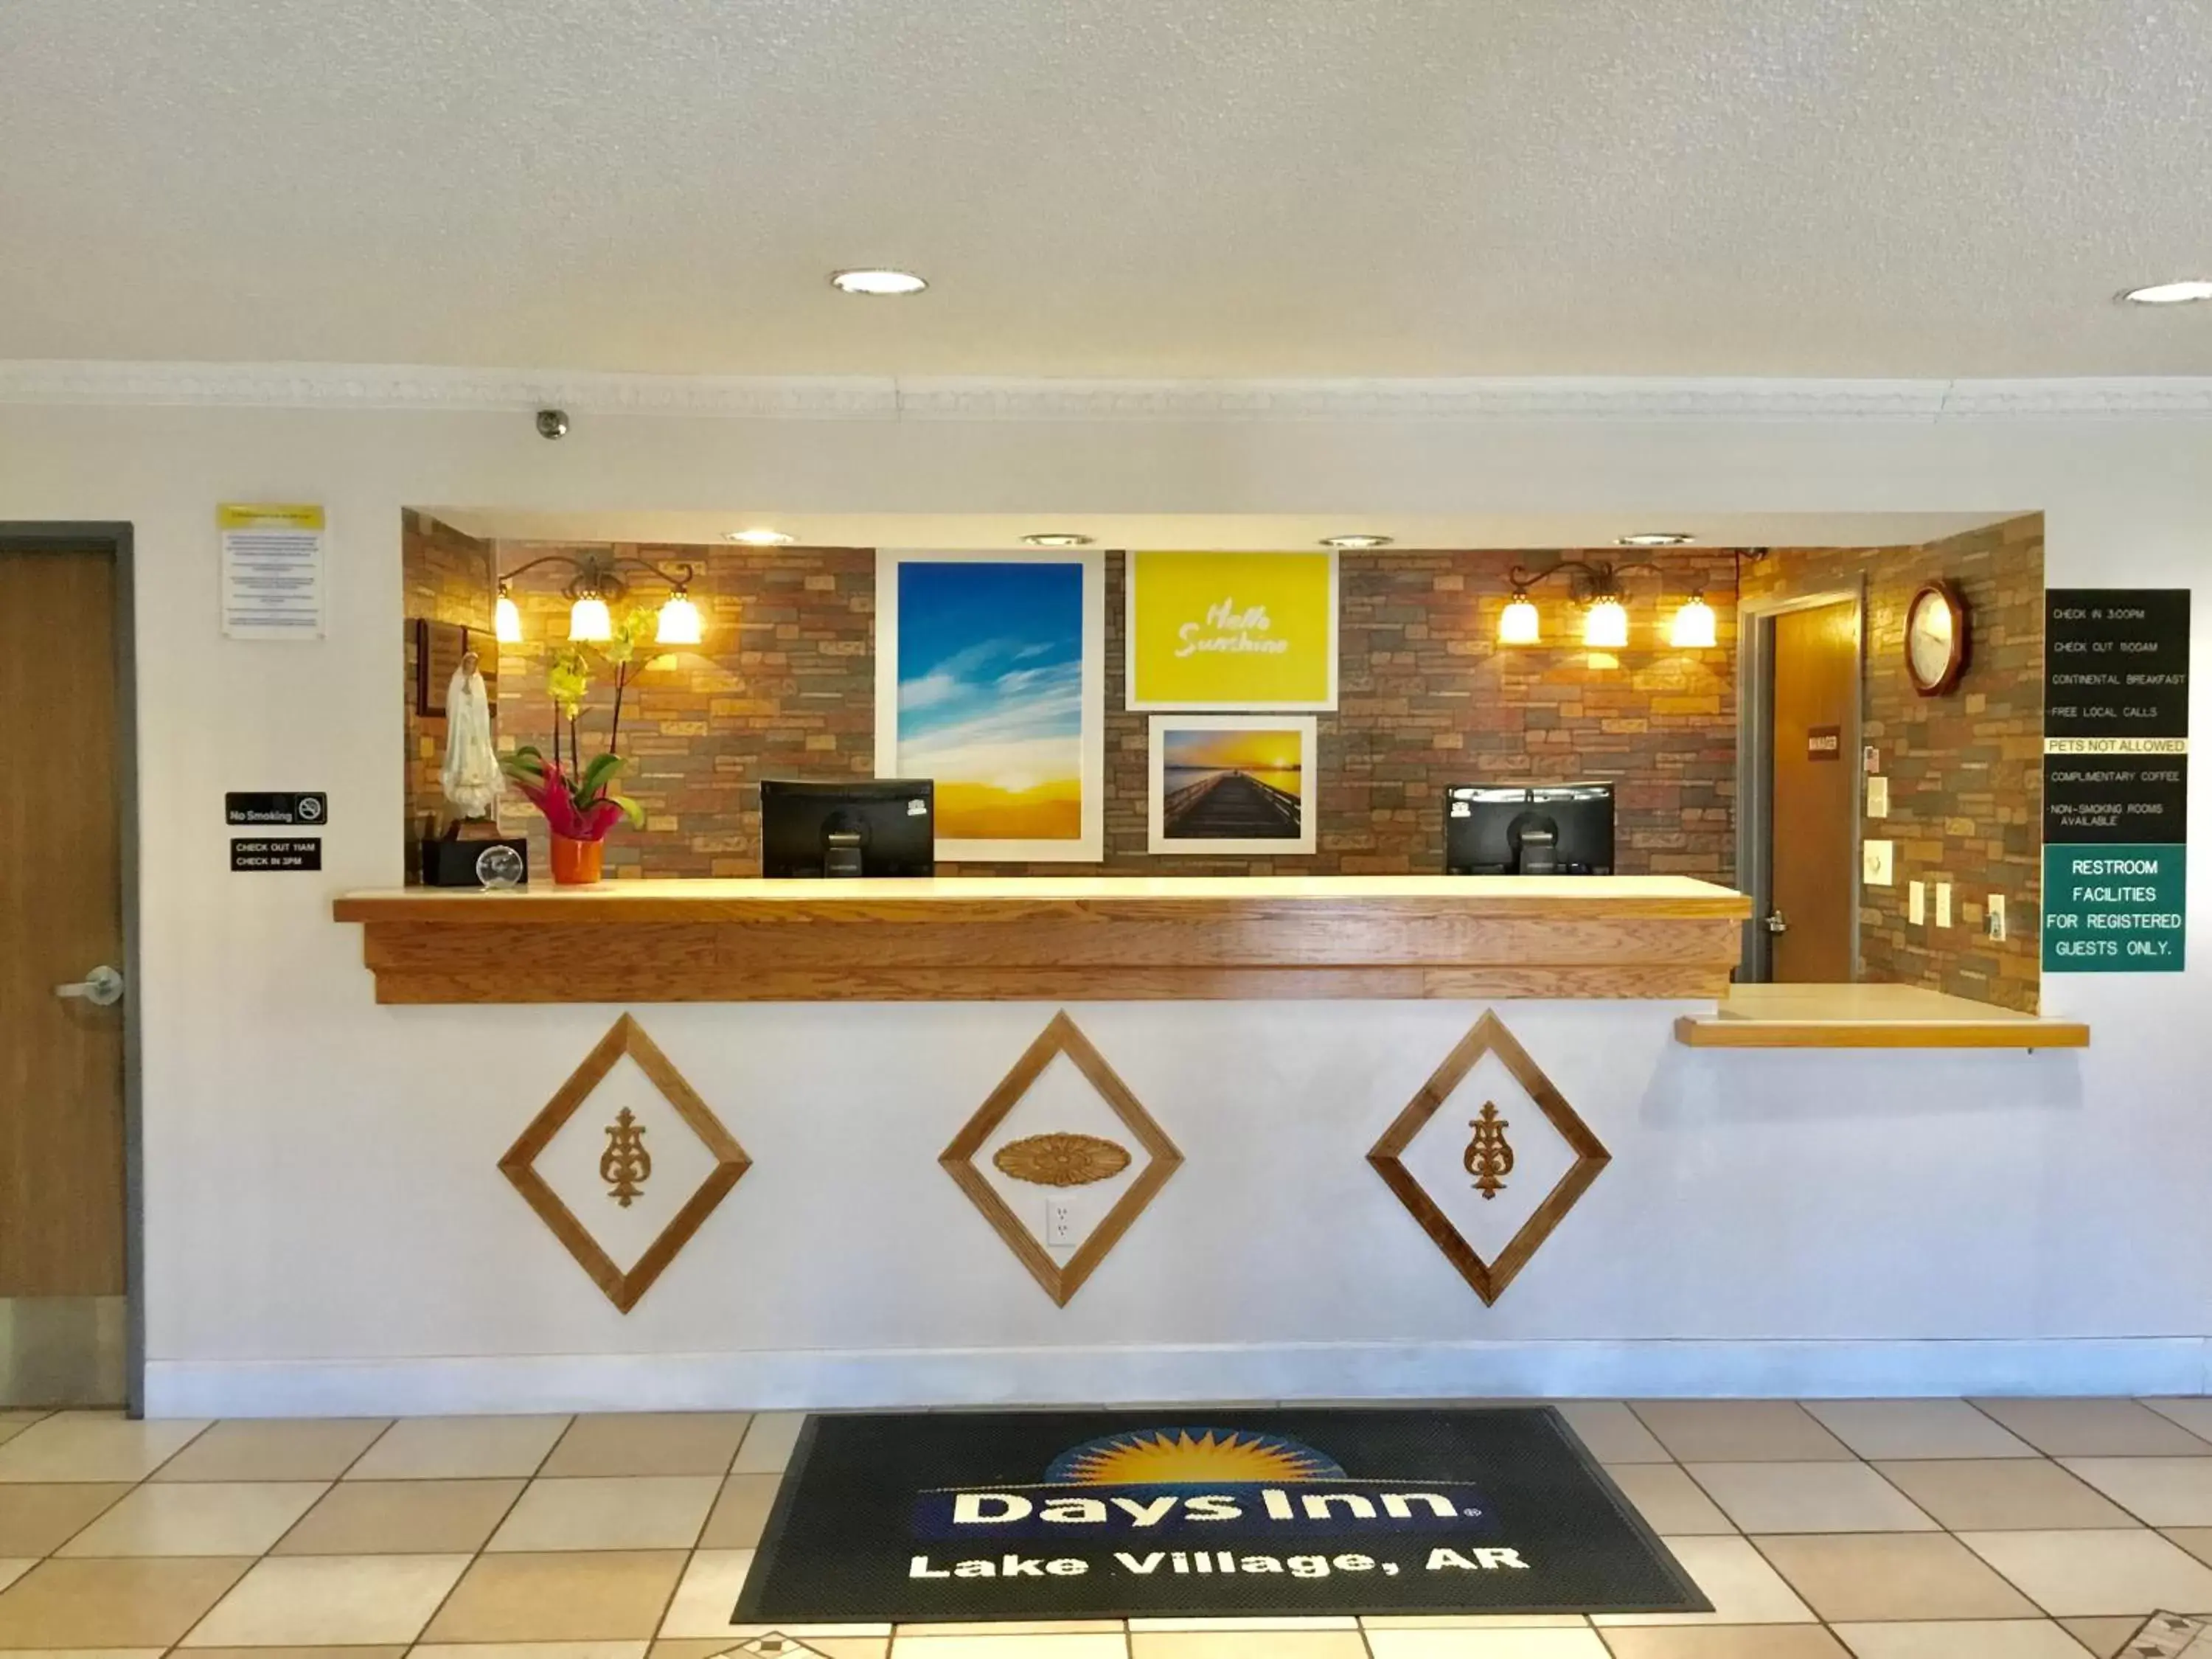 Lobby or reception, Lobby/Reception in Days Inn by Wyndham Lake Village